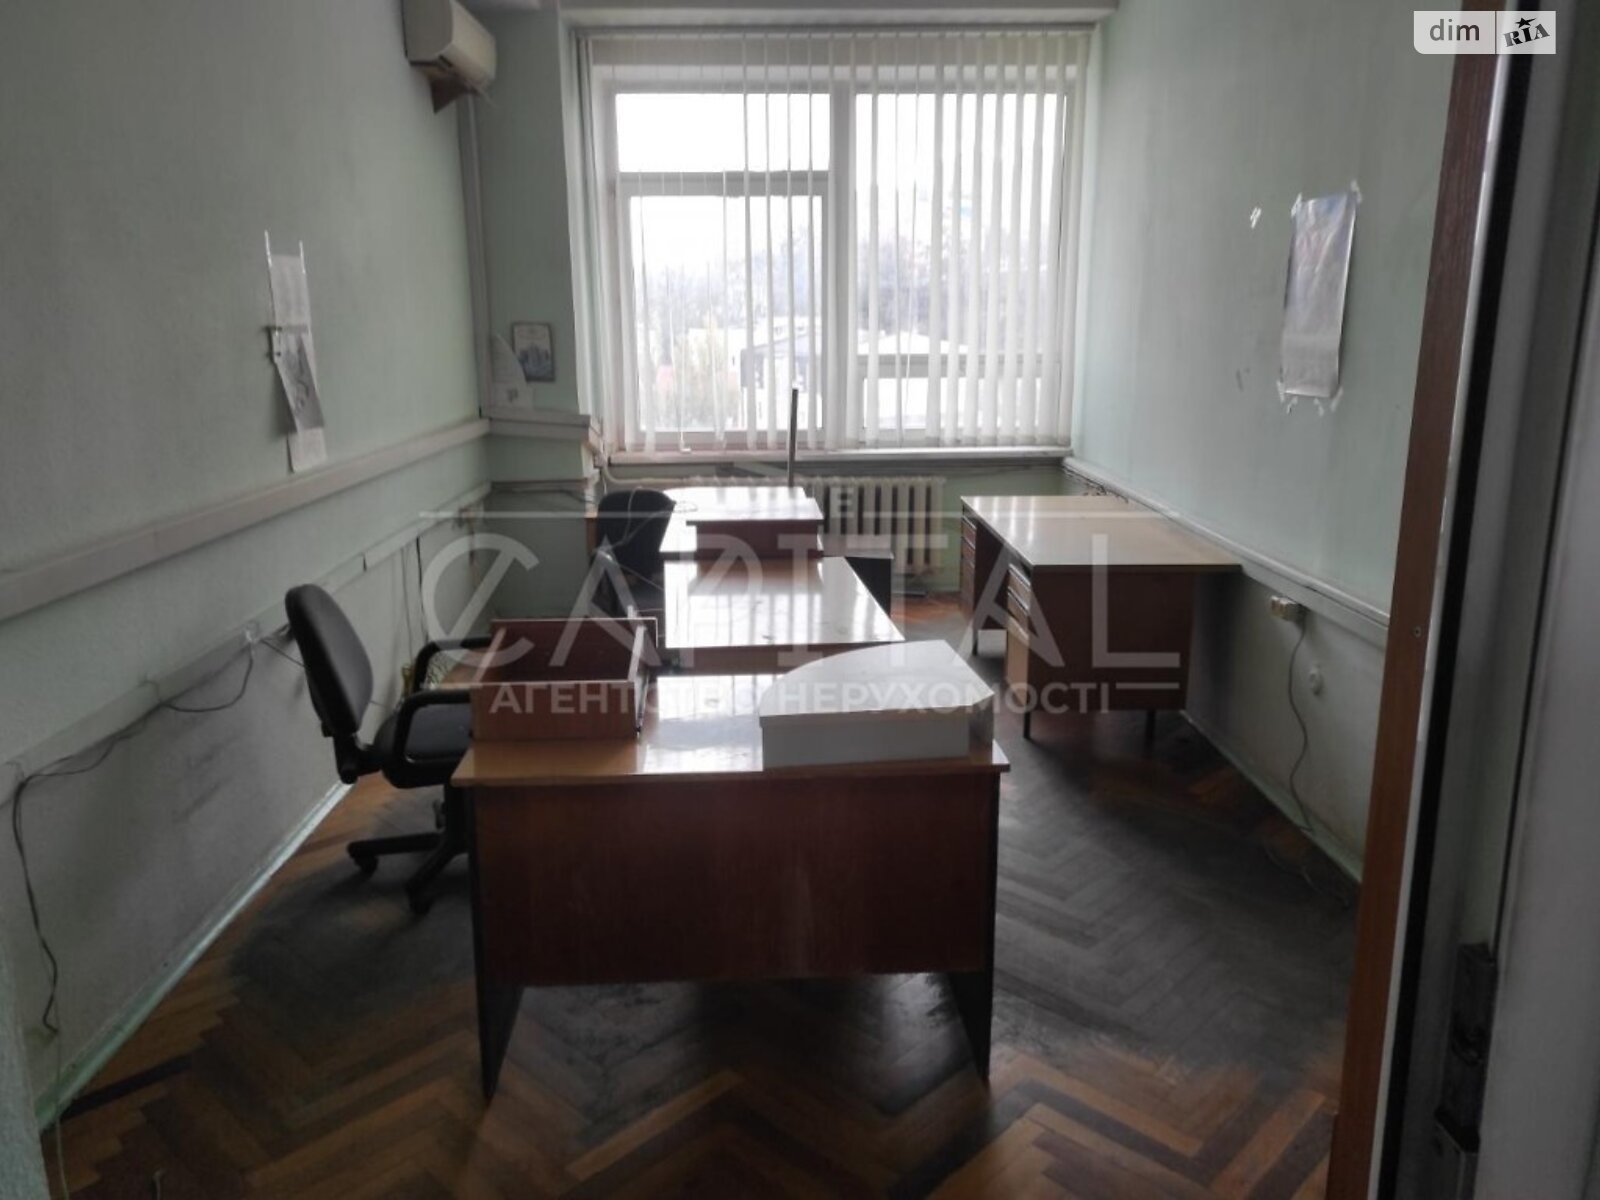 Аренда офисного помещения в Киеве, Кудрявский узвоз 1, помещений - 12, этаж - 8 фото 1